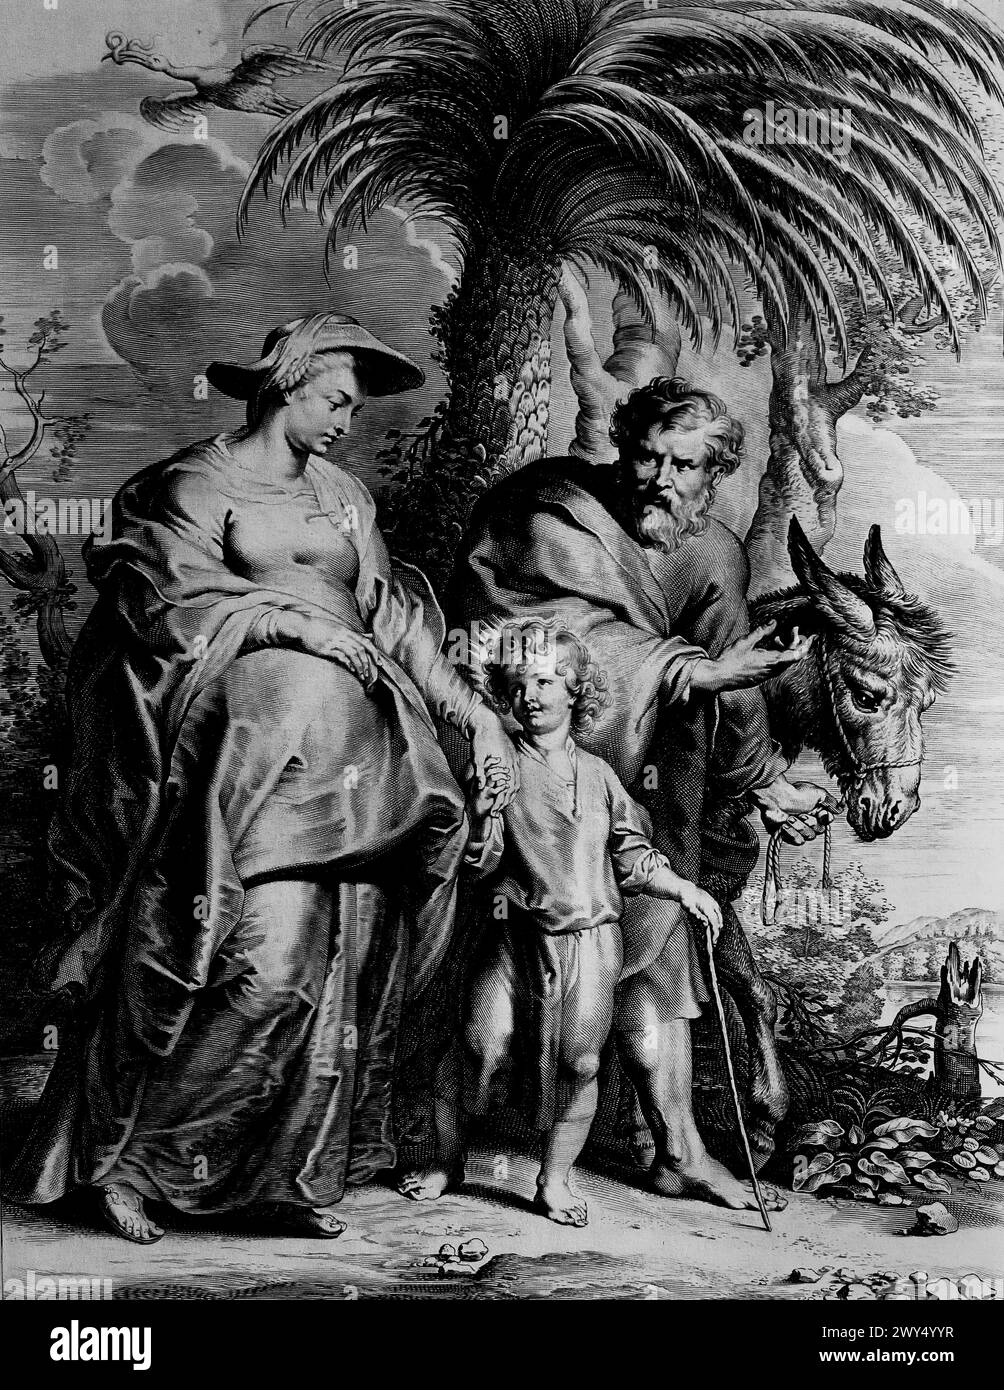 La fuite en Égypte 1620 Lucas Vorsterman (1595-1675) est un graveur baroque. Il a travaillé avec les artistes Peter Paul Rubens et Anthony van Dyck Musée Royal des Beaux-Arts, Anvers, Belgique, Belgique. Banque D'Images